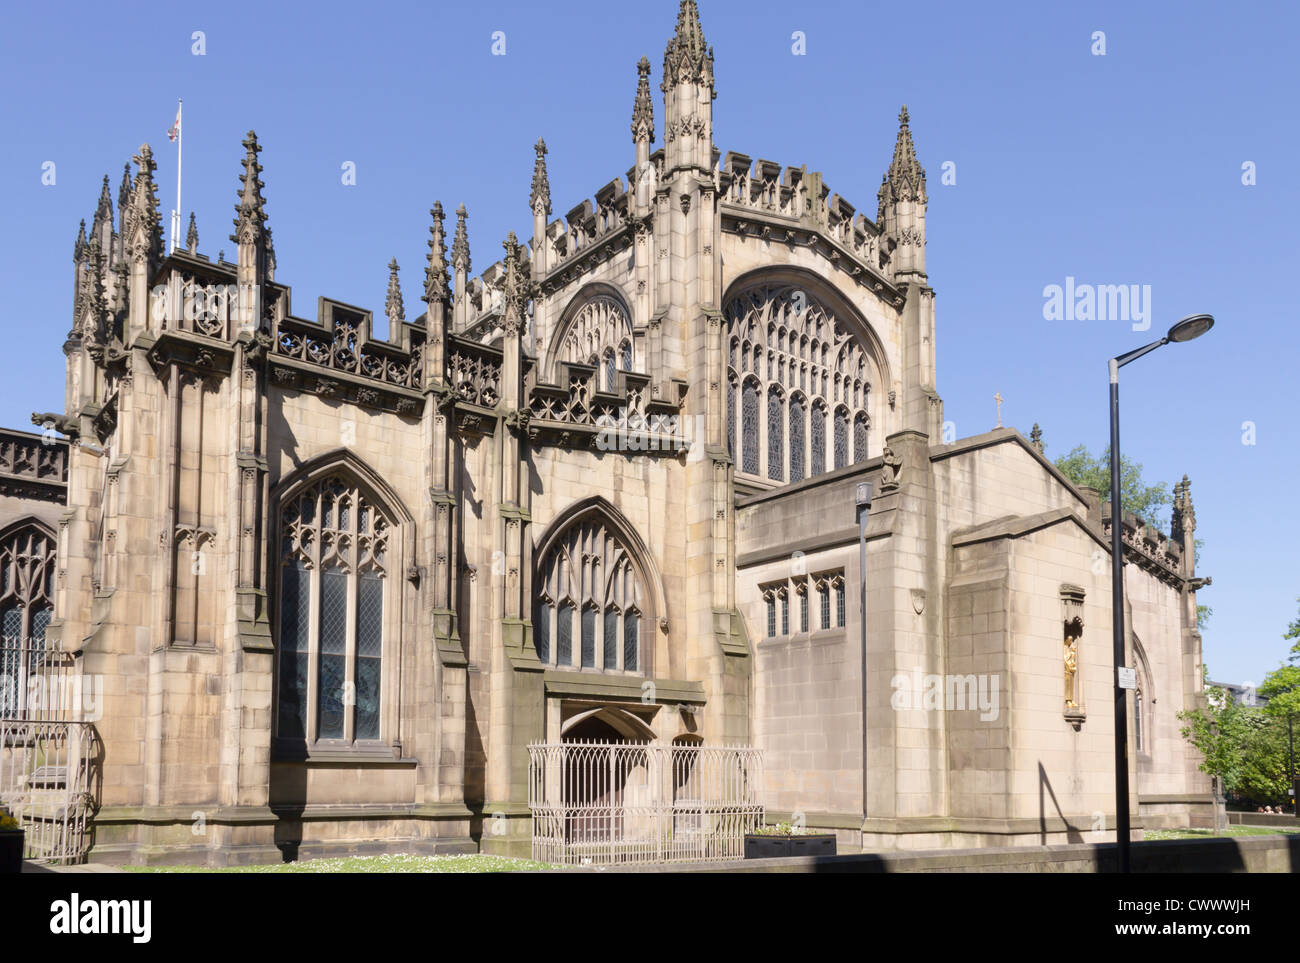 L'estremità est della Cattedrale di Manchester con la ricostruita Cappella Madonna prominente in stile e posizione. alla fine dell'edificio. Foto Stock